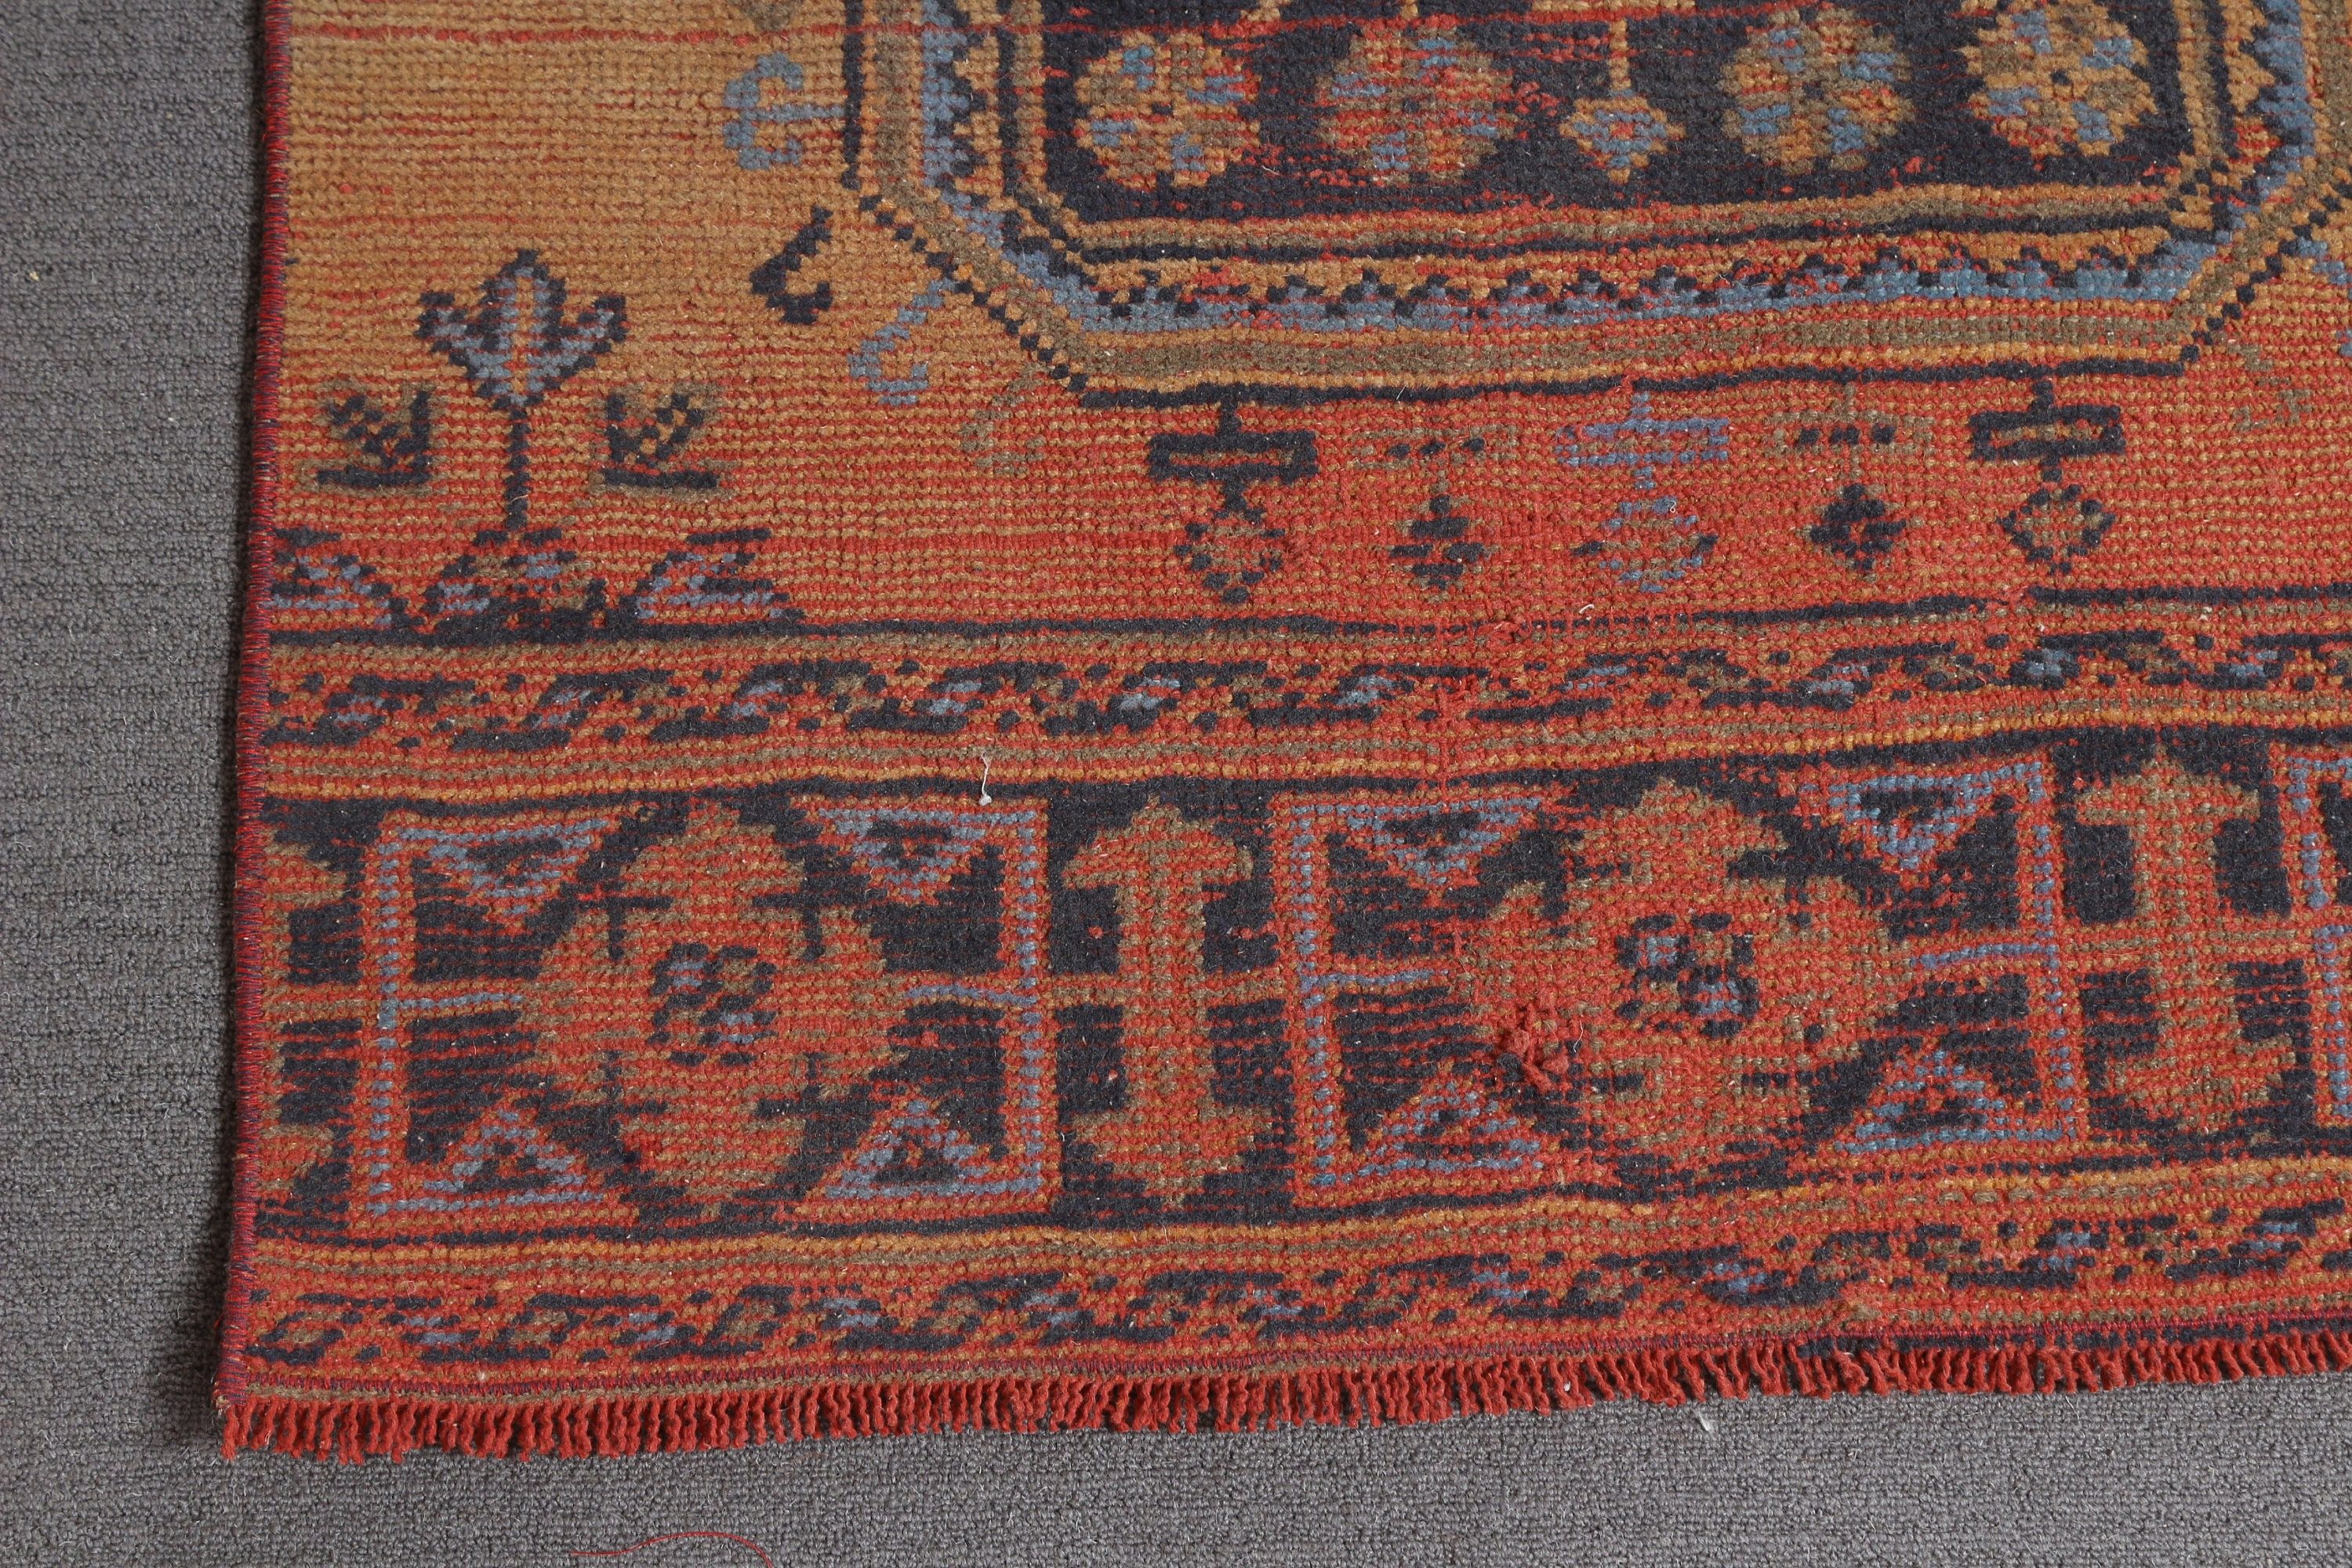 Vintage Rug, Turkish Rug, Hallway Rug, Rugs for Hallway, 2.9x11.5 ft Runner Rug, Kitchen Rugs, Pink Floor Rugs, Bohemian Rug, Oriental Rugs